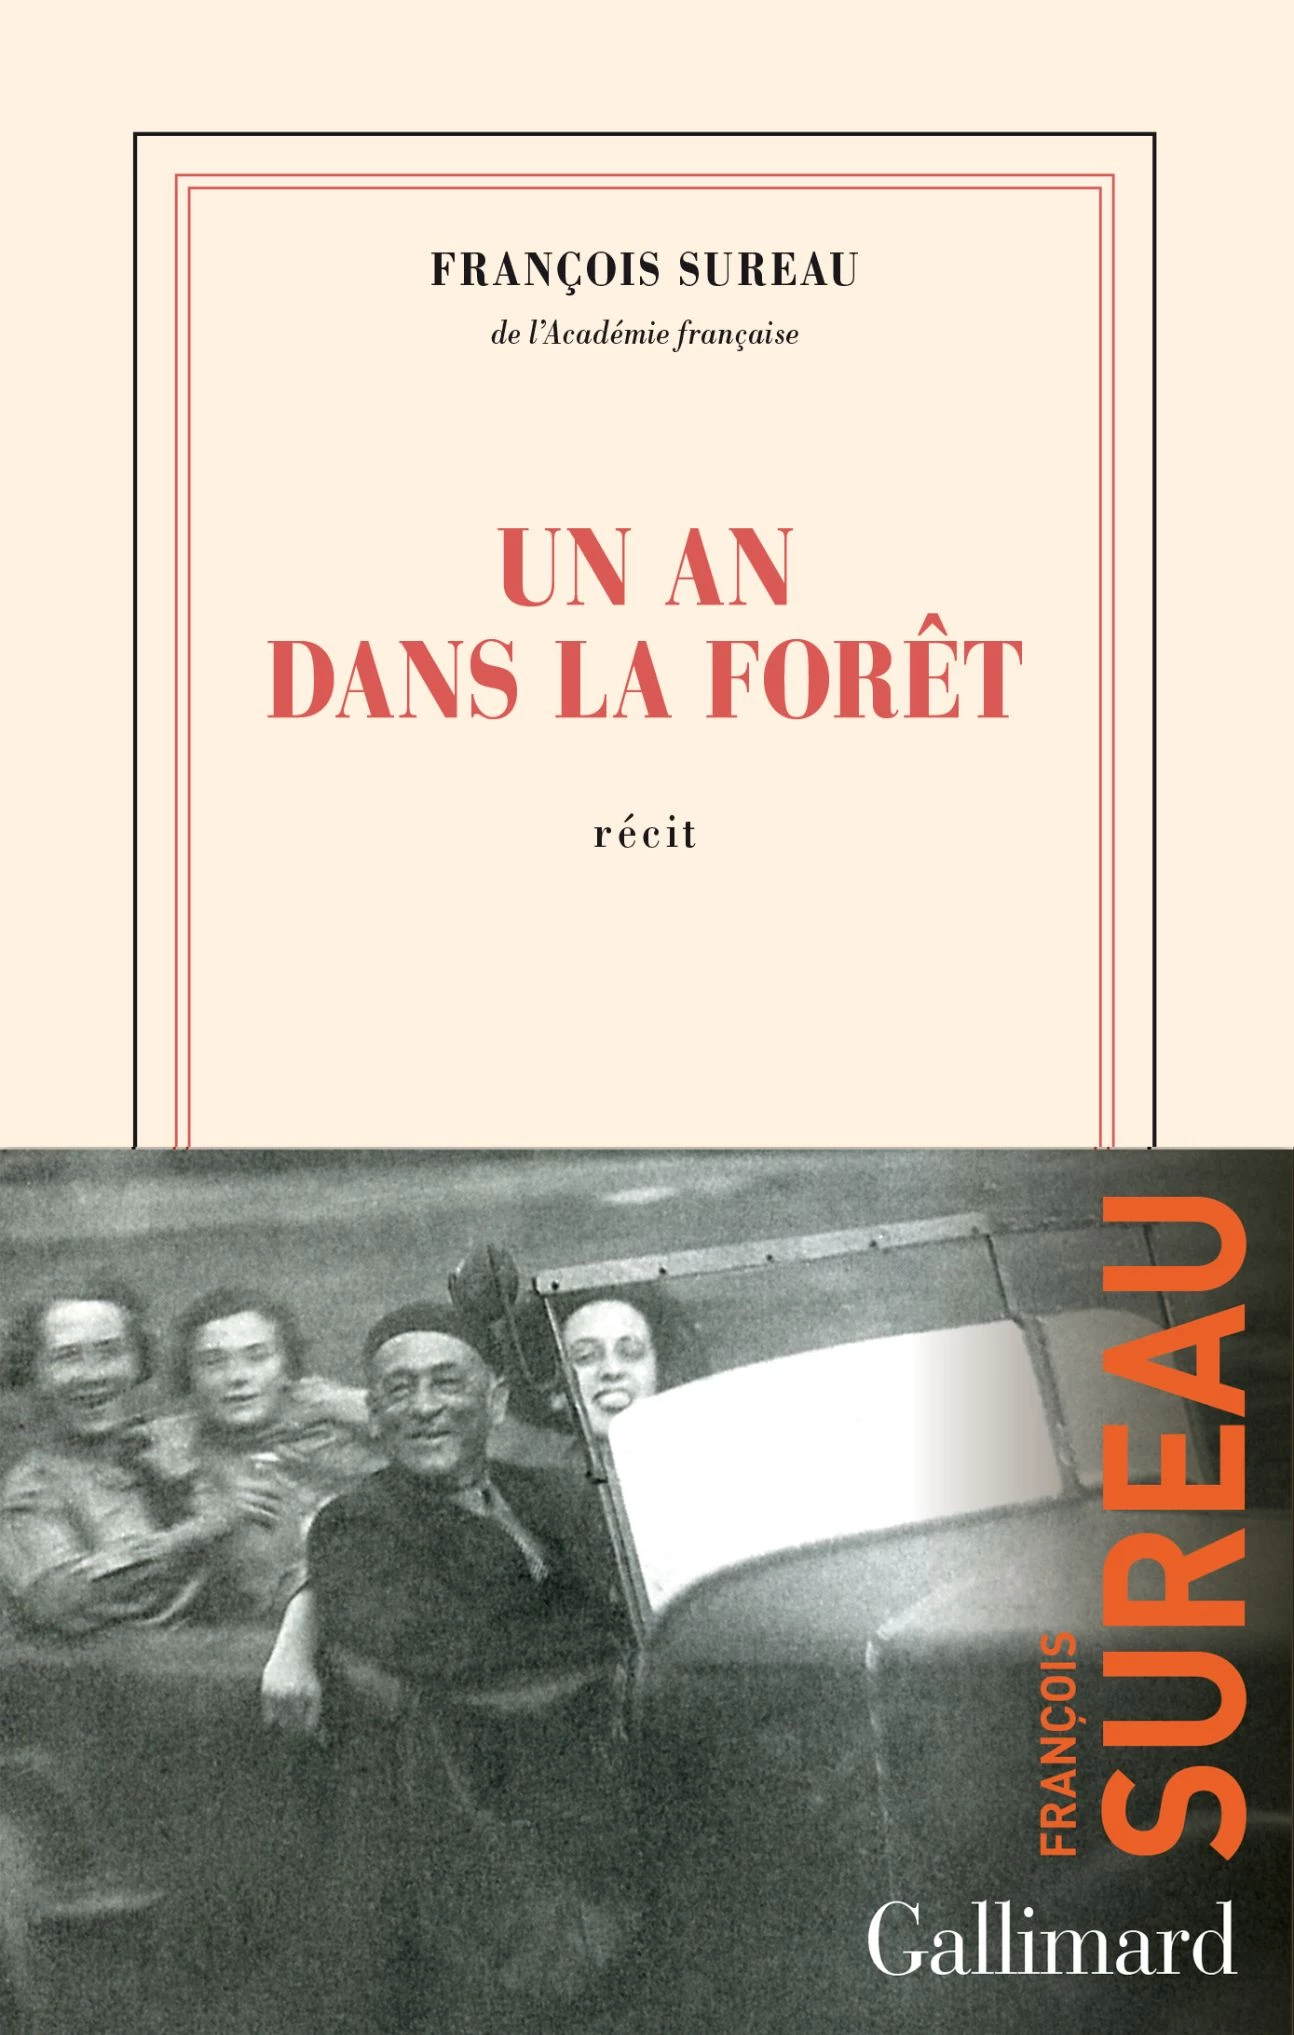 "Un an dans la forêt" from François Sureau